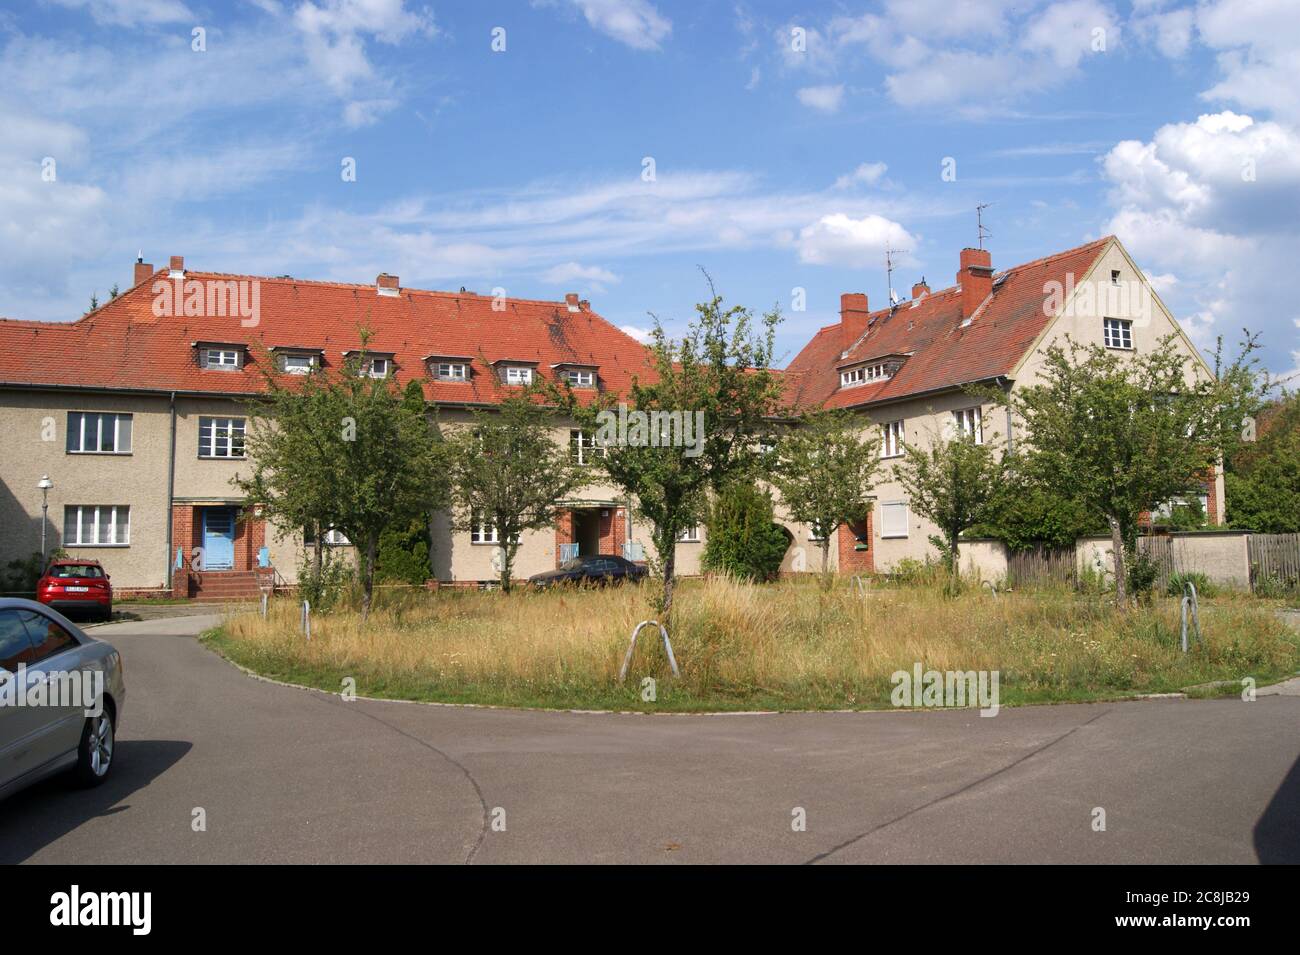 Die zwischen 1914 und 1917 nach den Entwürfen des Architekten Paul Schmitthenner errichtete Gartenstadt Staaken in Berlin-Spandau.Hier: Ungewitterweg Stock Photo